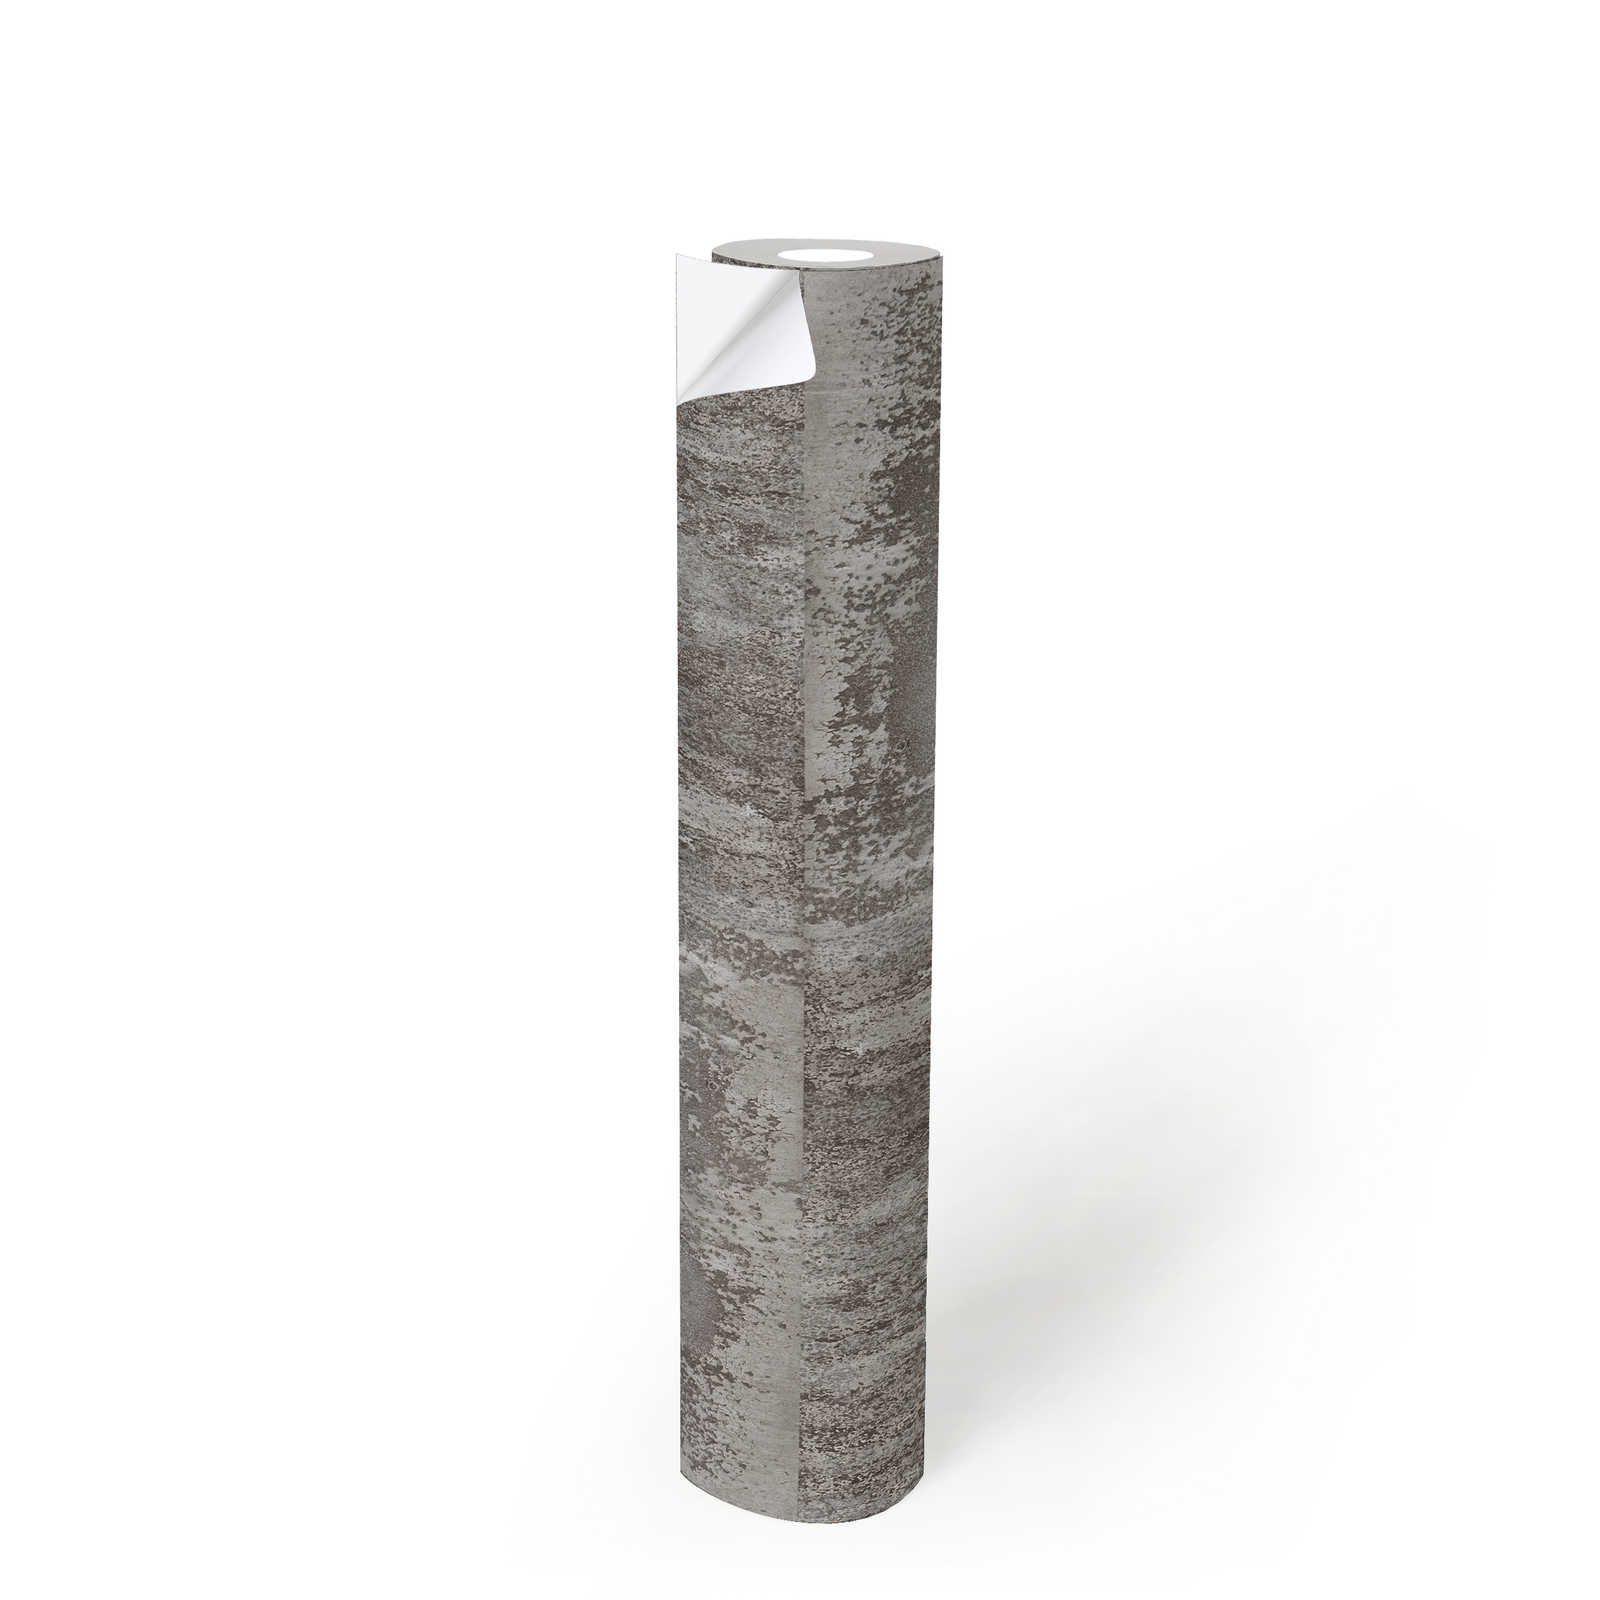             Zelfklevend behangpapier | roestlook design met metallic effect - grijs
        